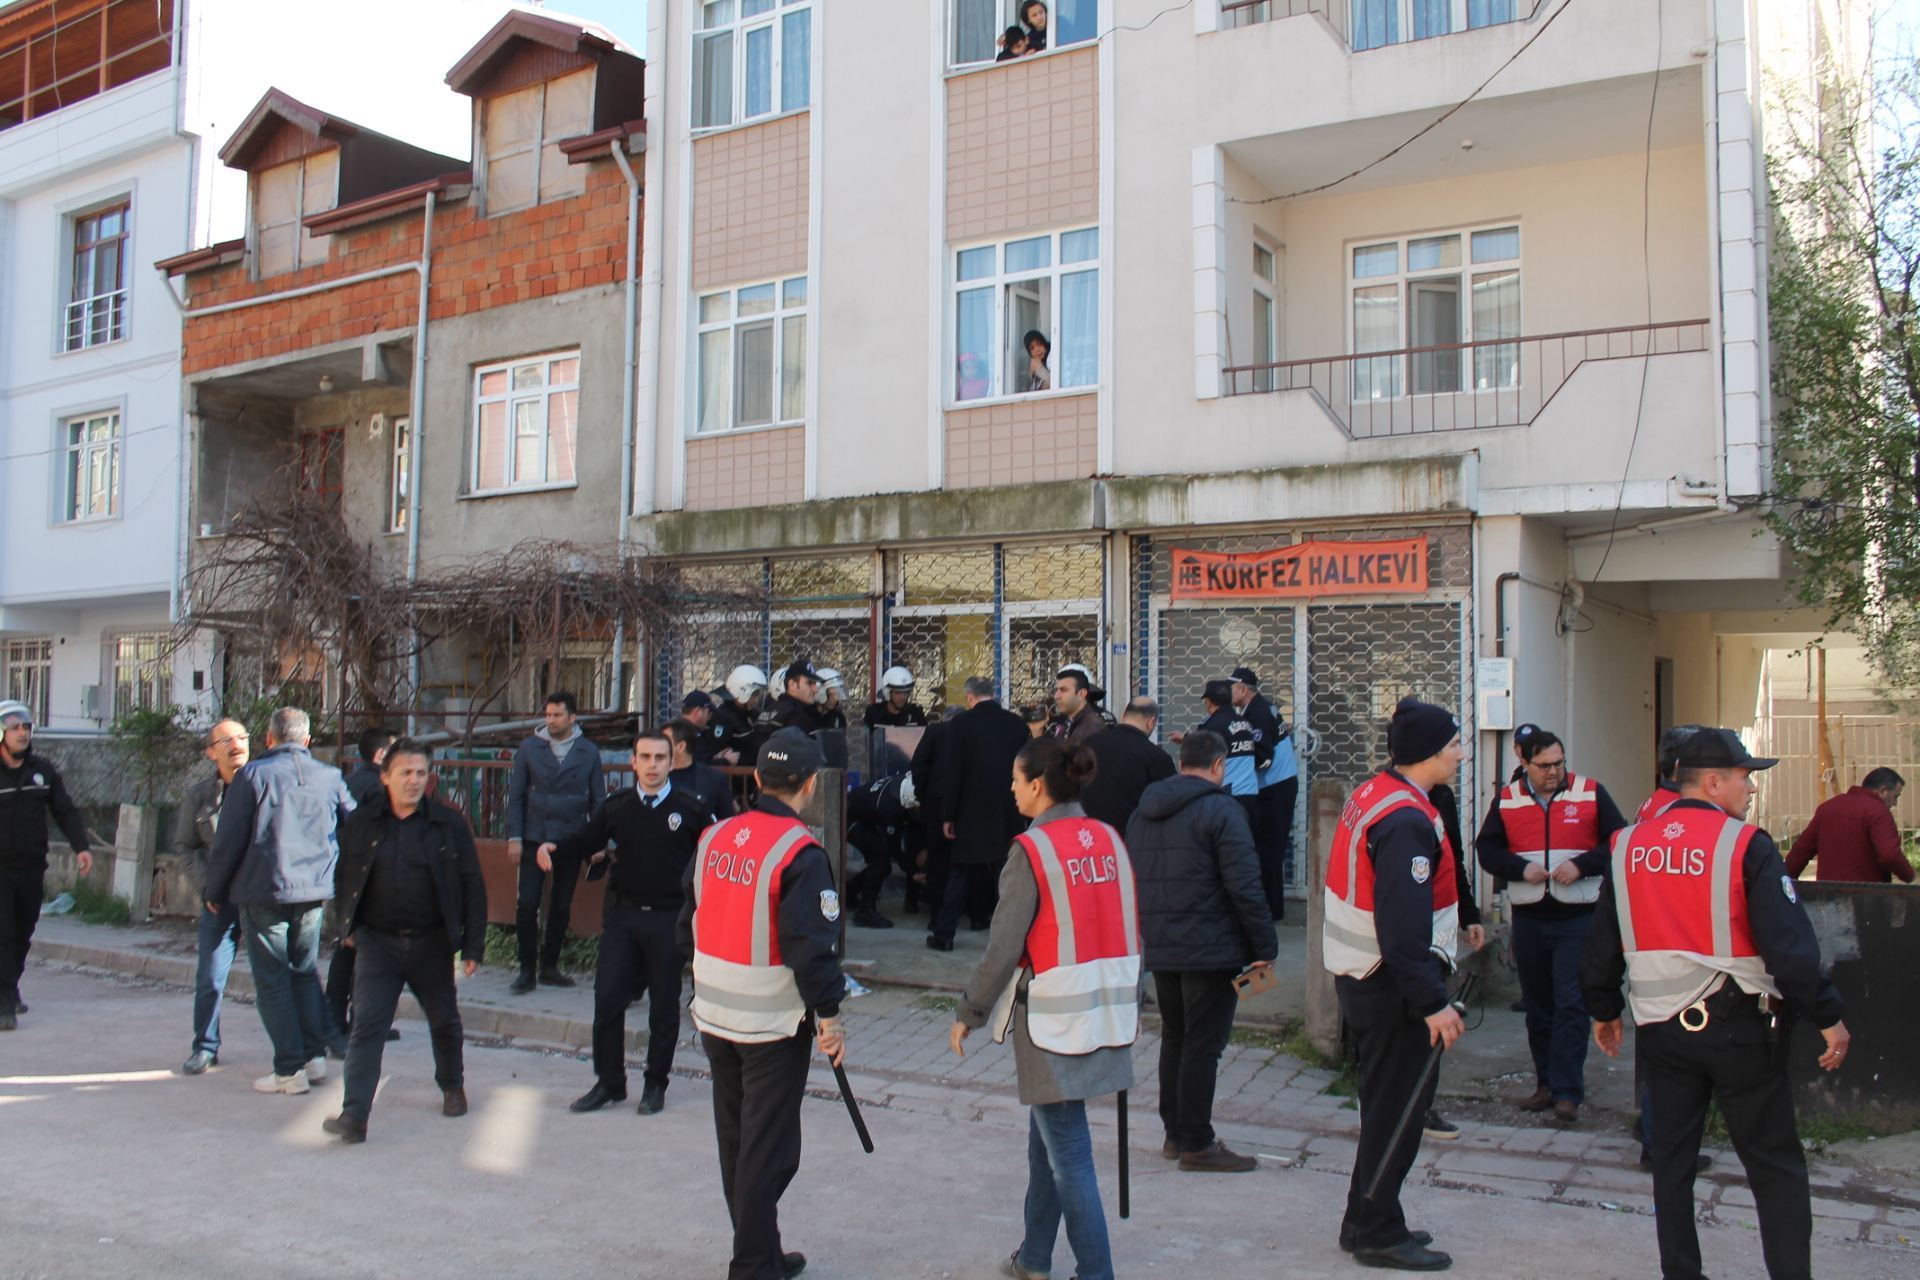 Kocaeli’de halkevinin kapatılması protestosuna gözaltı